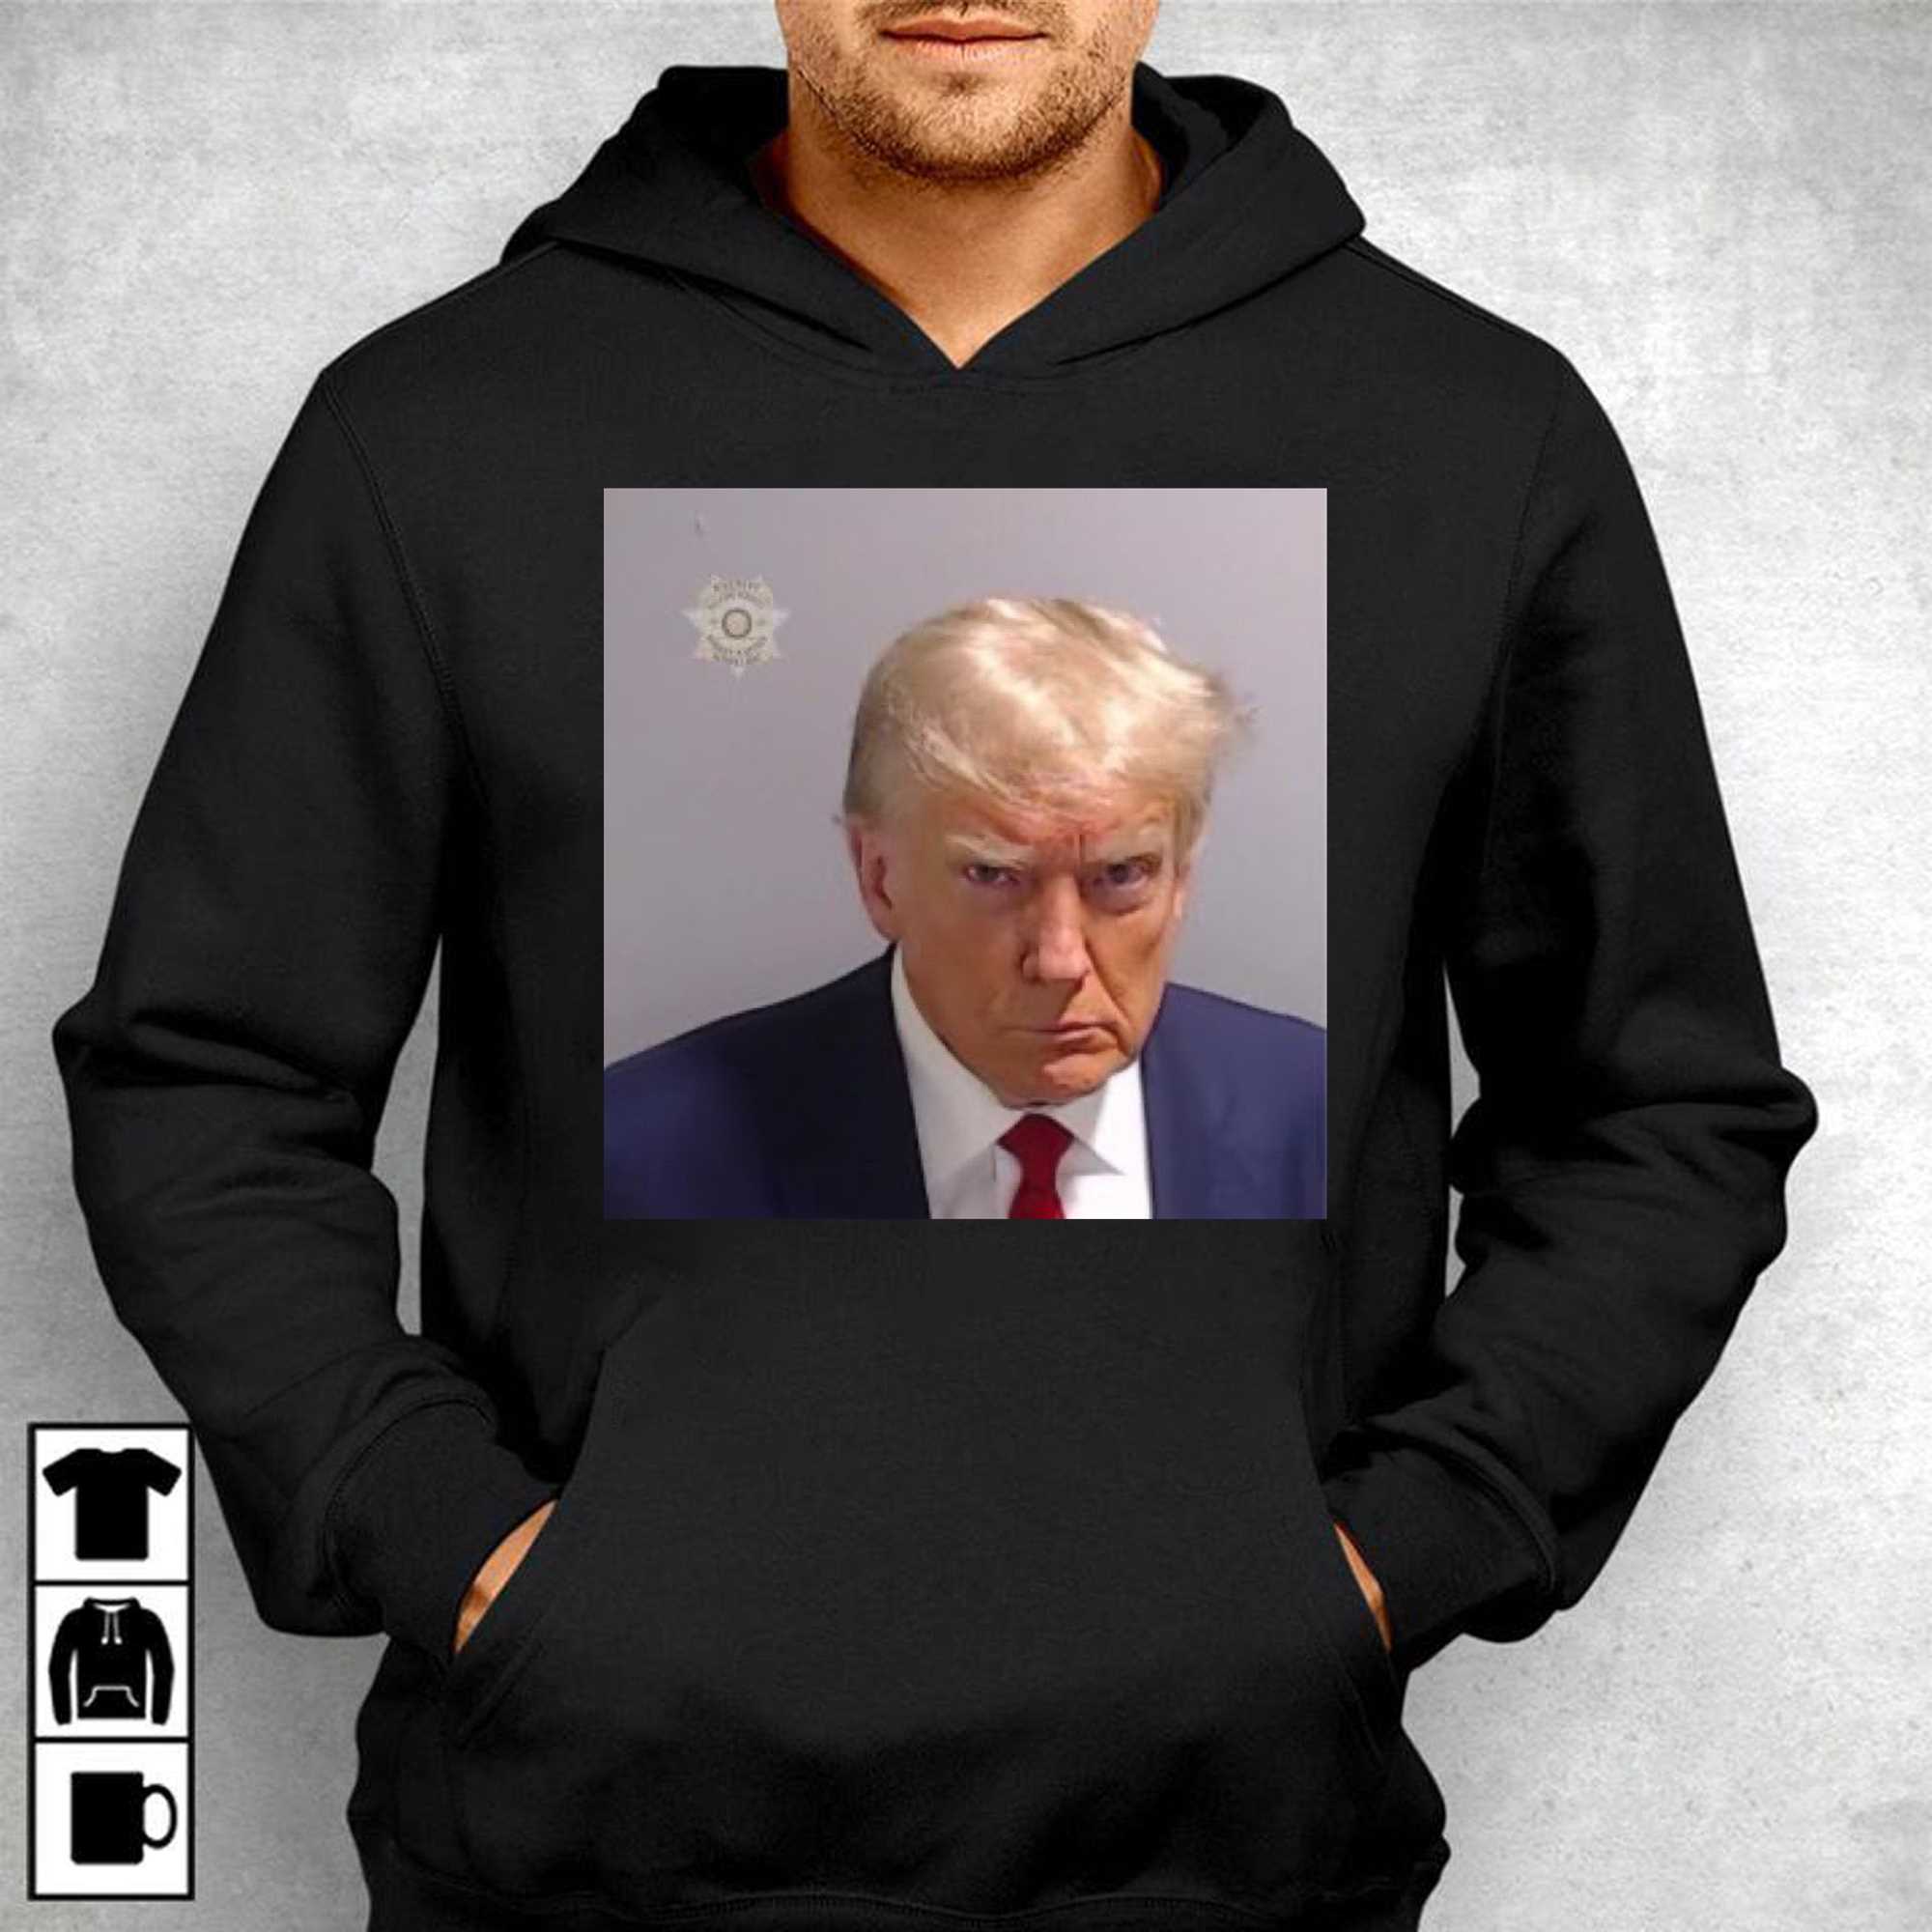 Official Donald Trump Mug Shot T-shirt - Shibtee Clothing